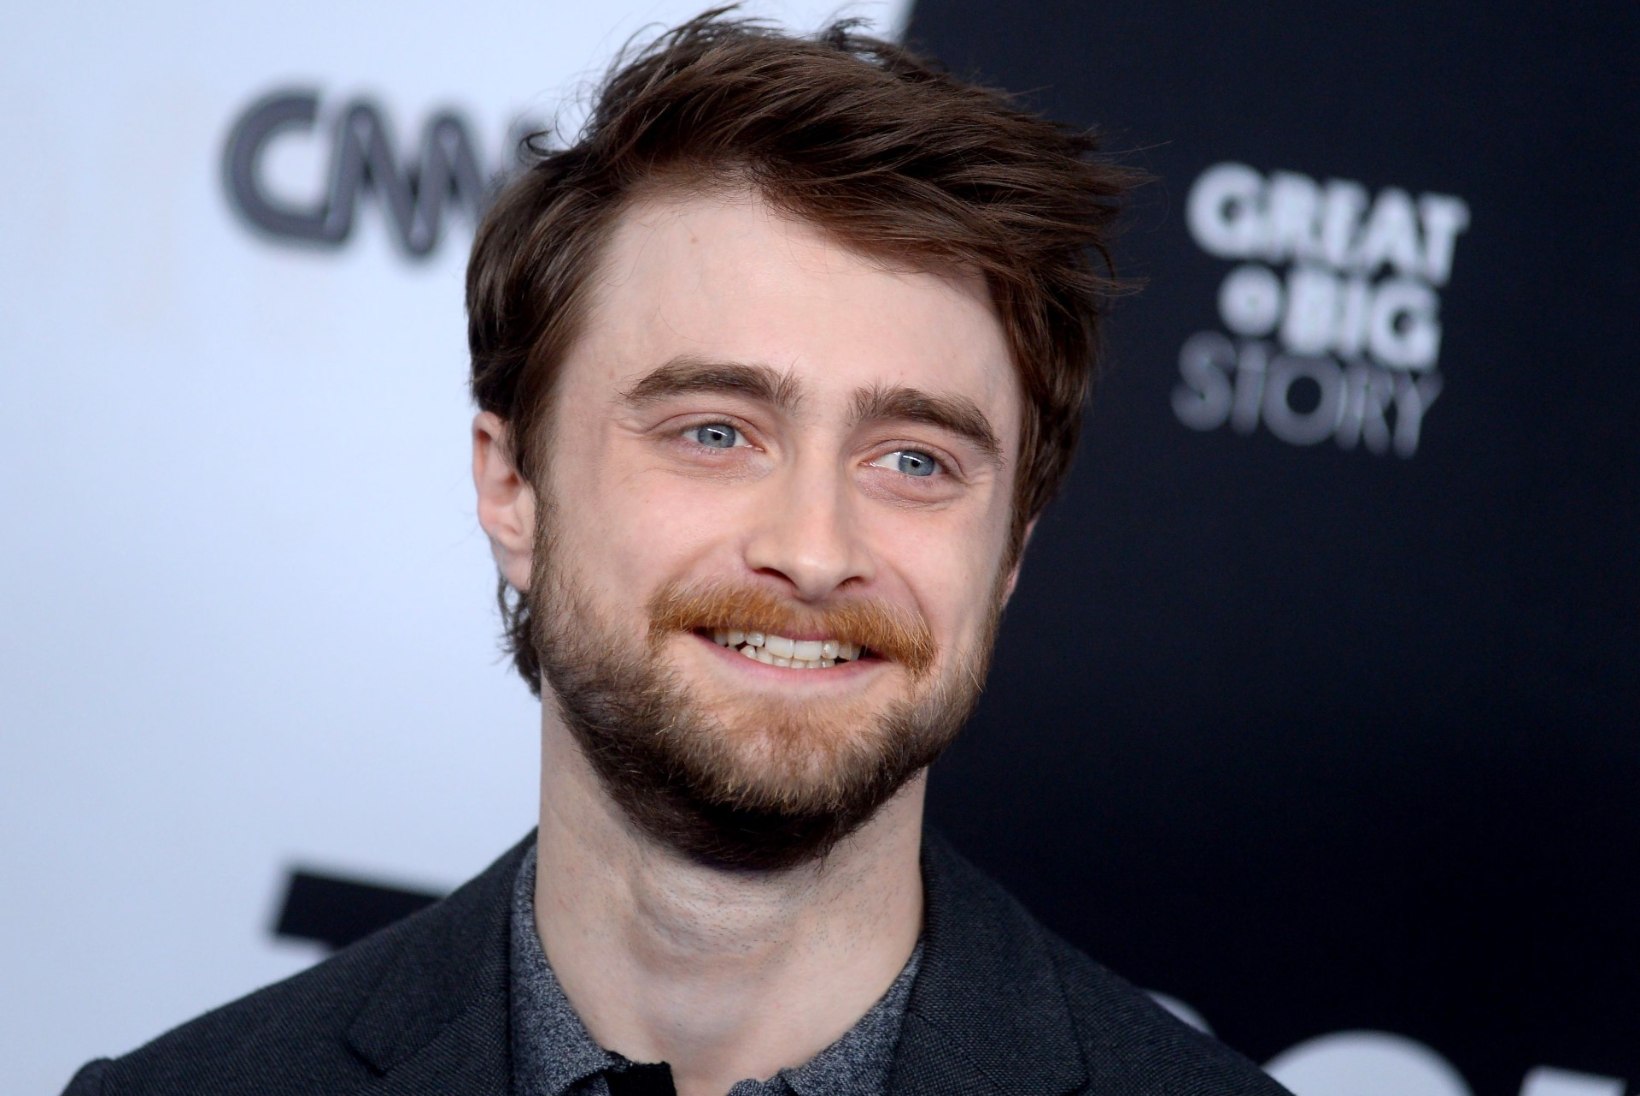 Harry Potterit kehastanud Daniel Radcliffe on kindel, et võluripoisi filmisari saab tulevikus uusversiooni